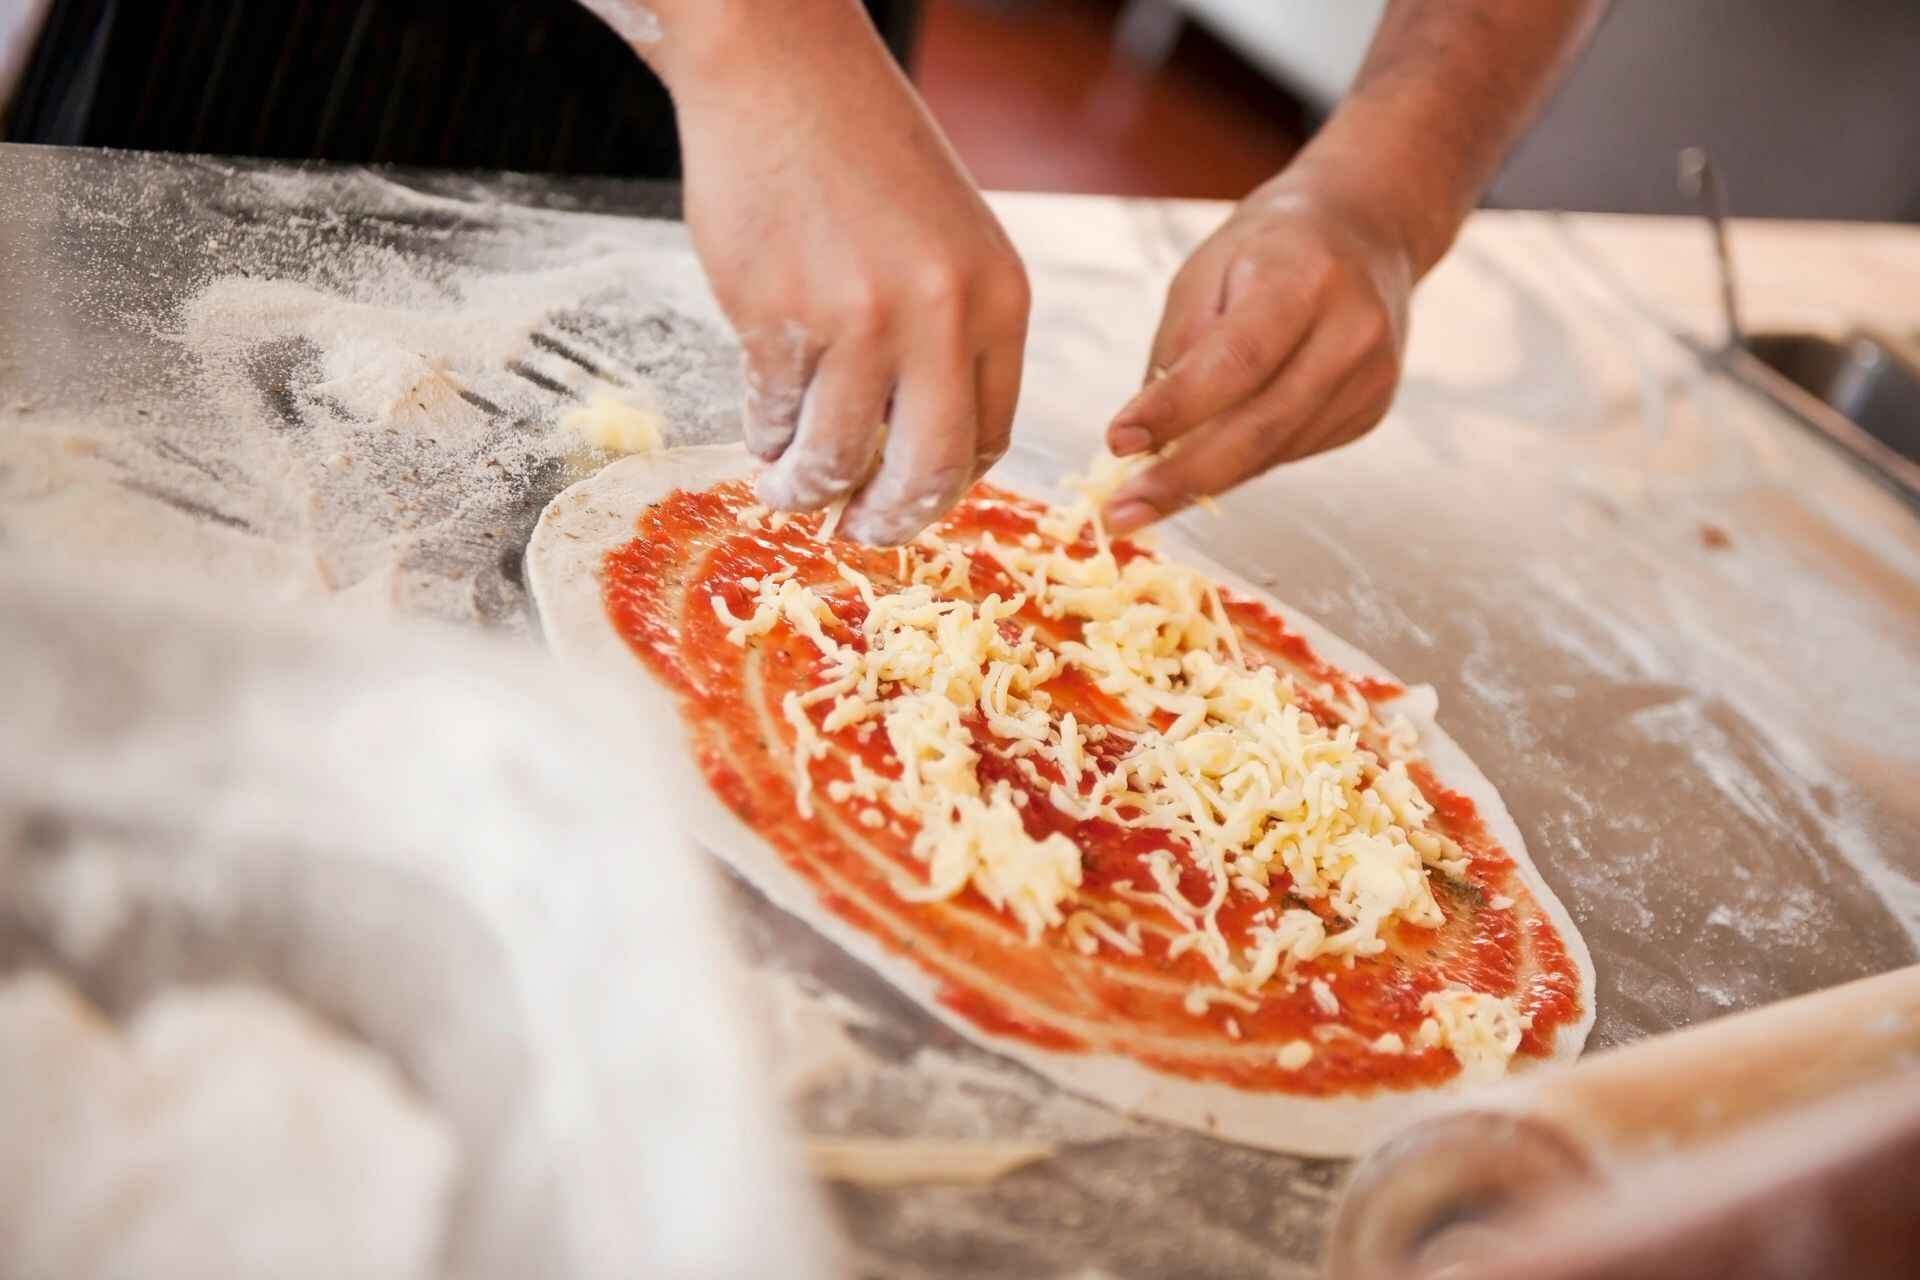 Bisogna comprendere nel dettaglio gli ingredienti che compongono la pizza